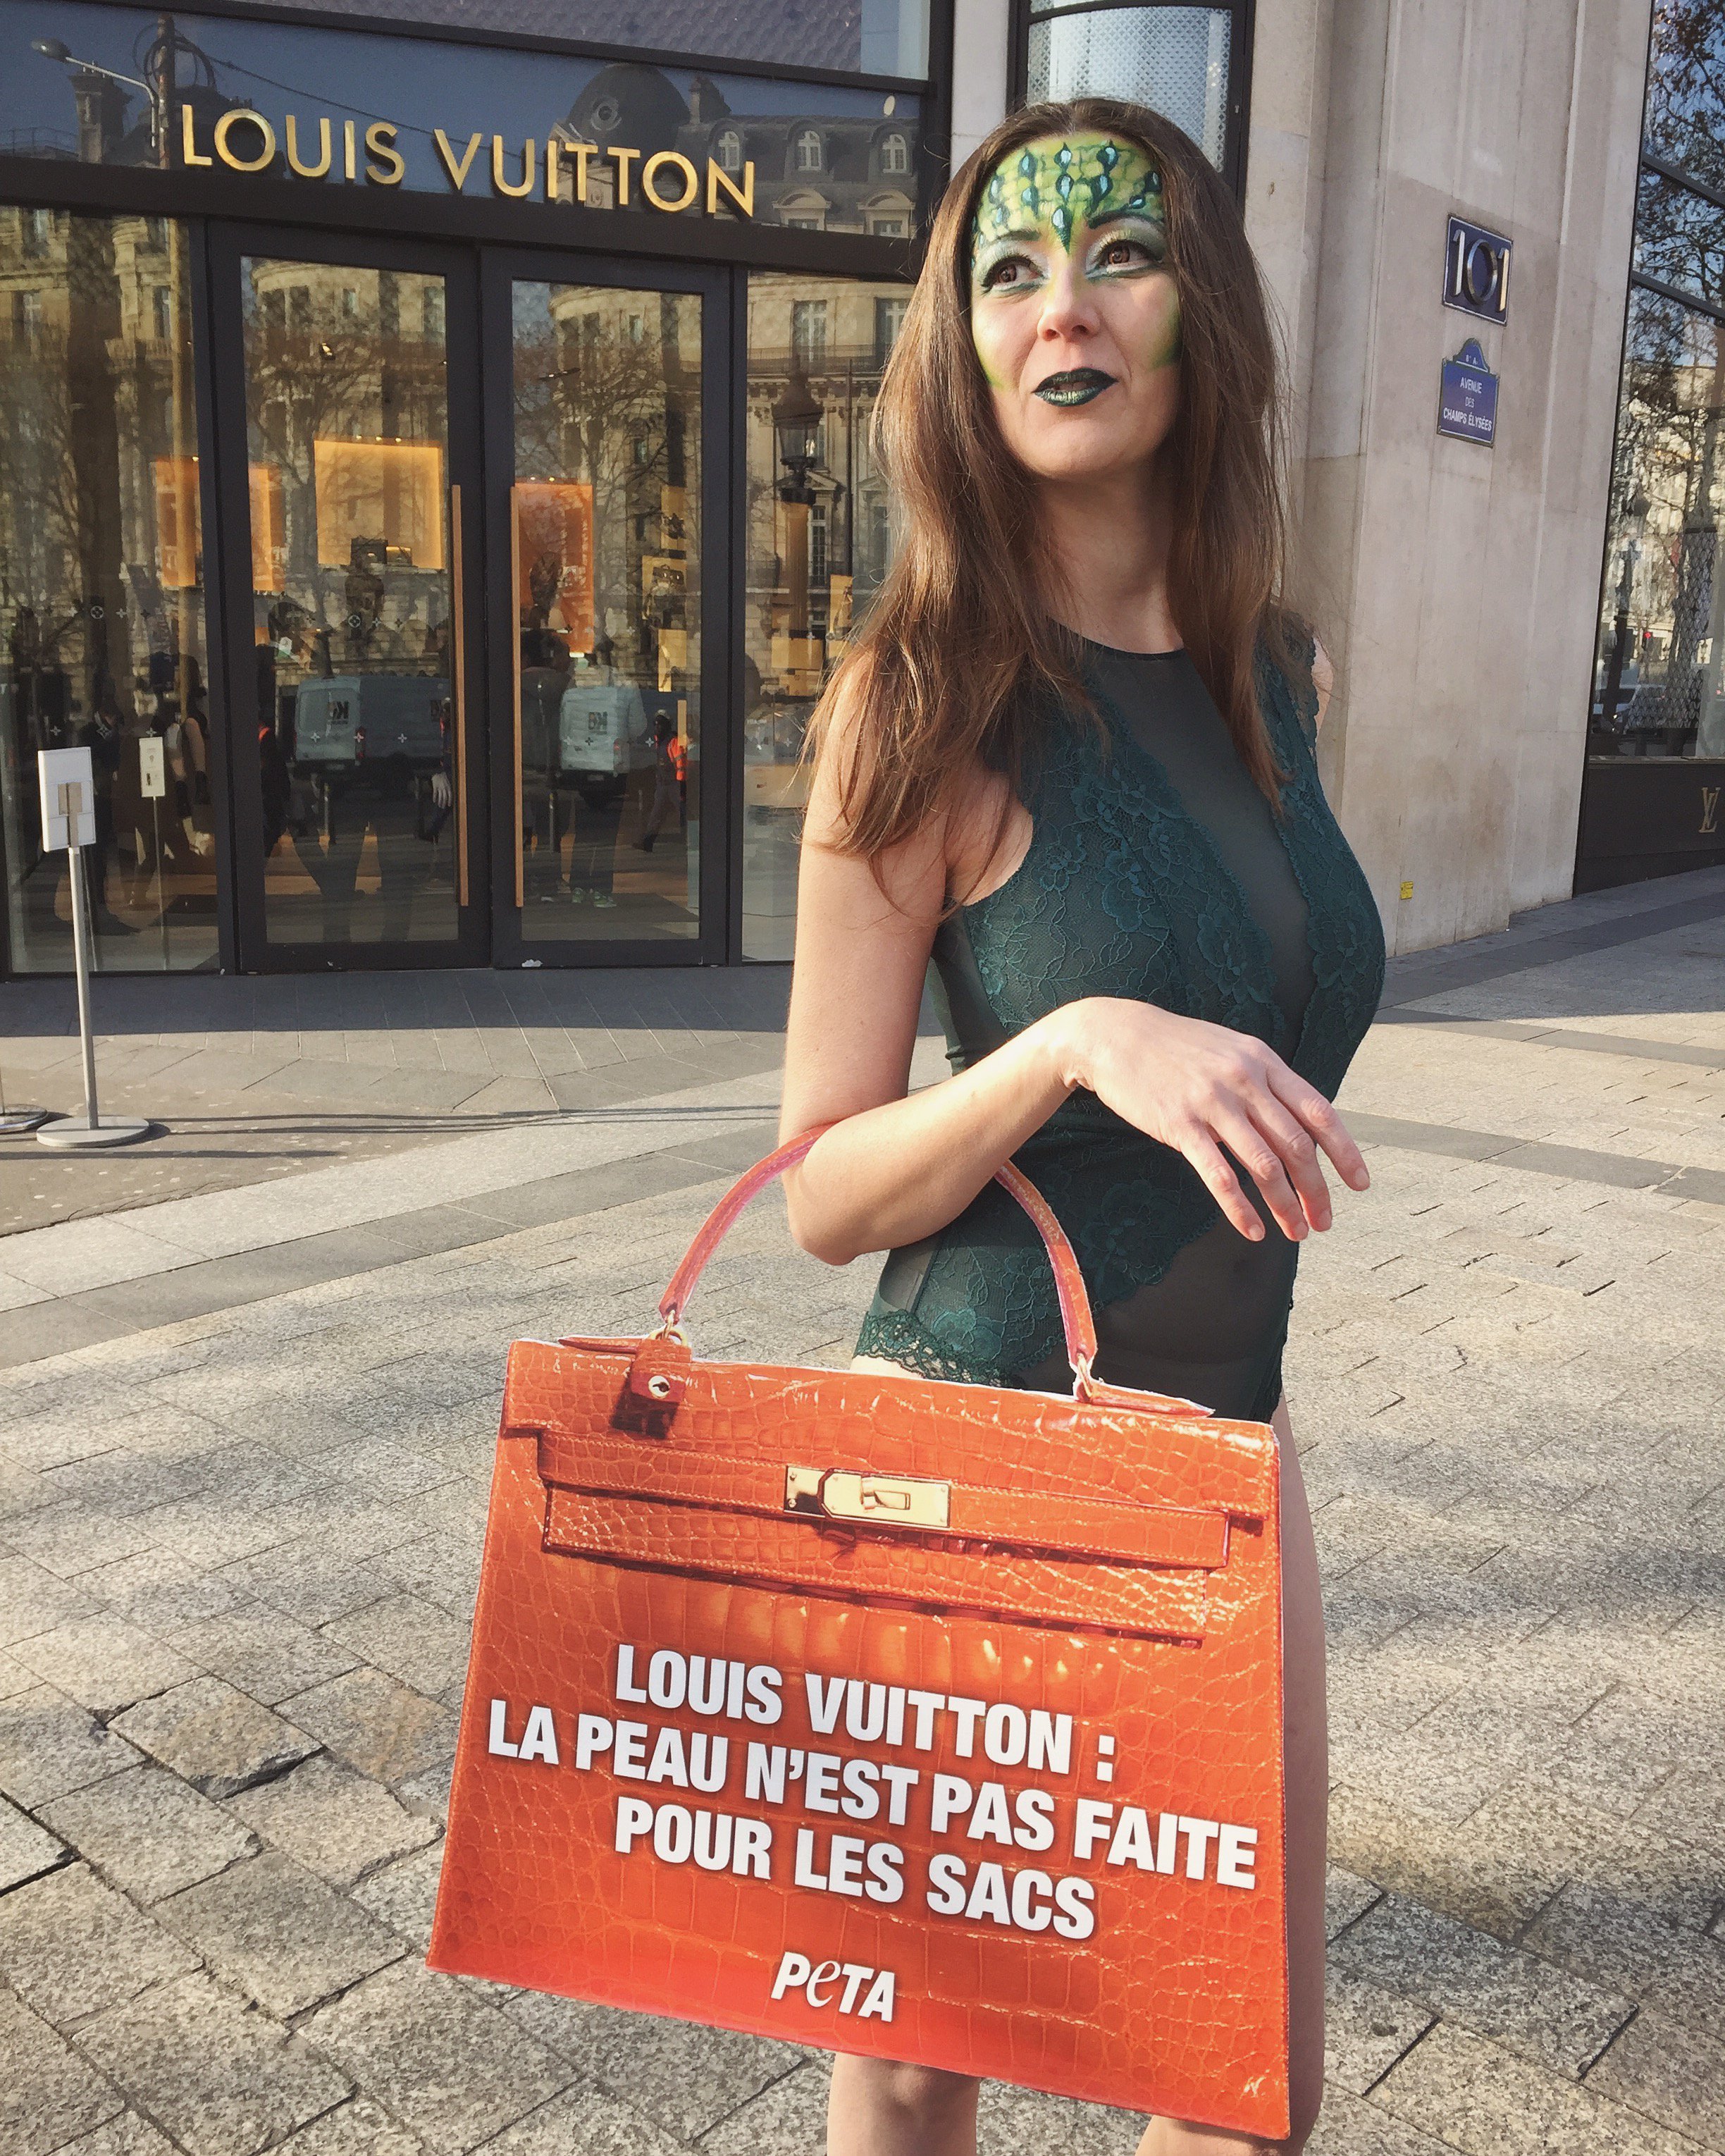 PETA on X: #Paris: A crocodile tells @LouisVuitton that her skin